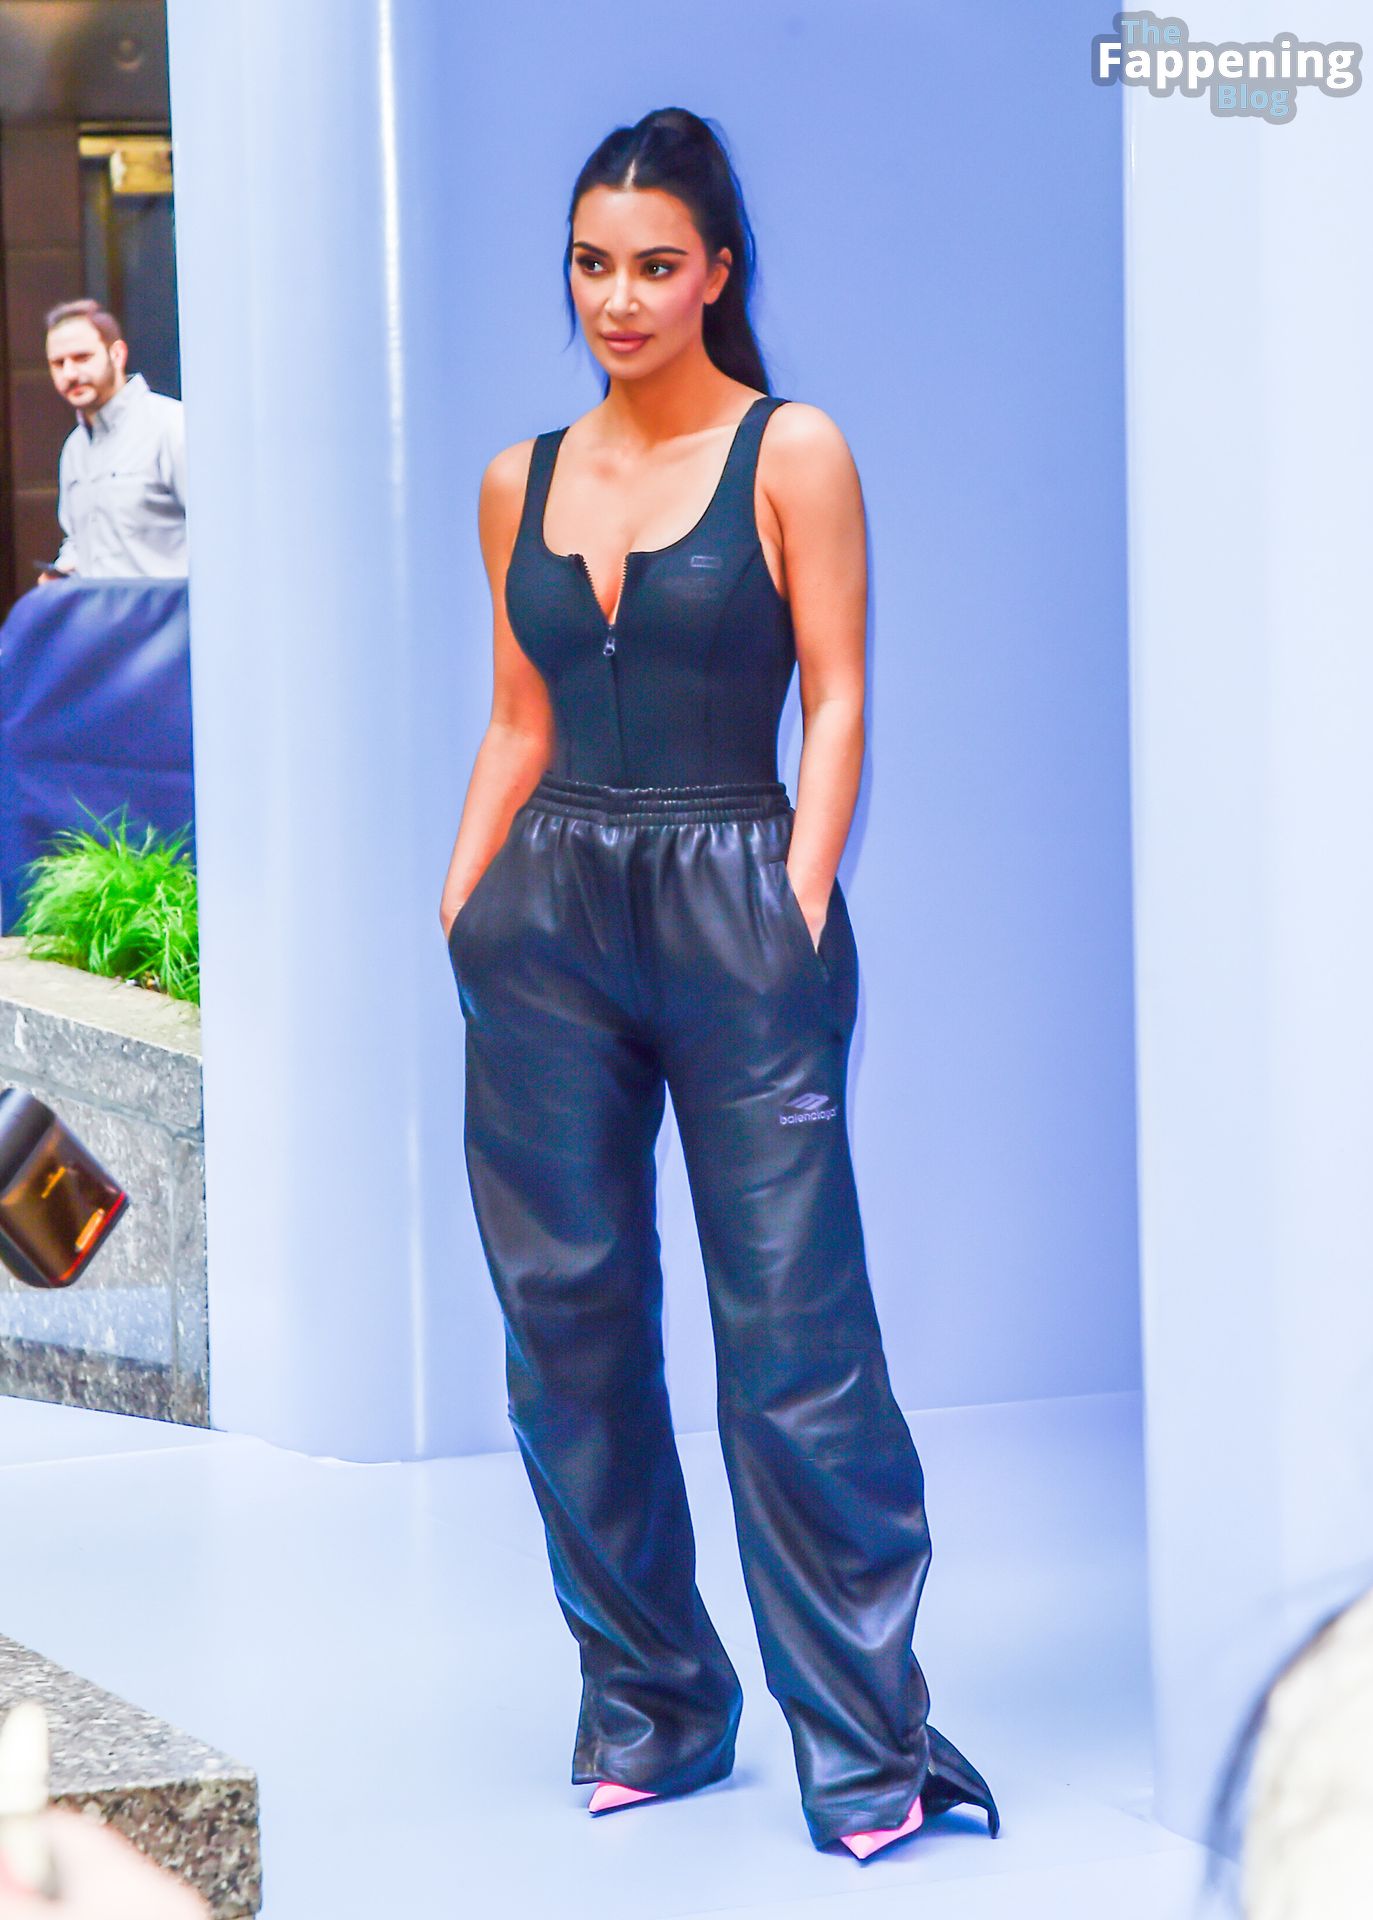 Kim-Kardashian-Sexy-The-Fappening-Blog-92-1.jpg